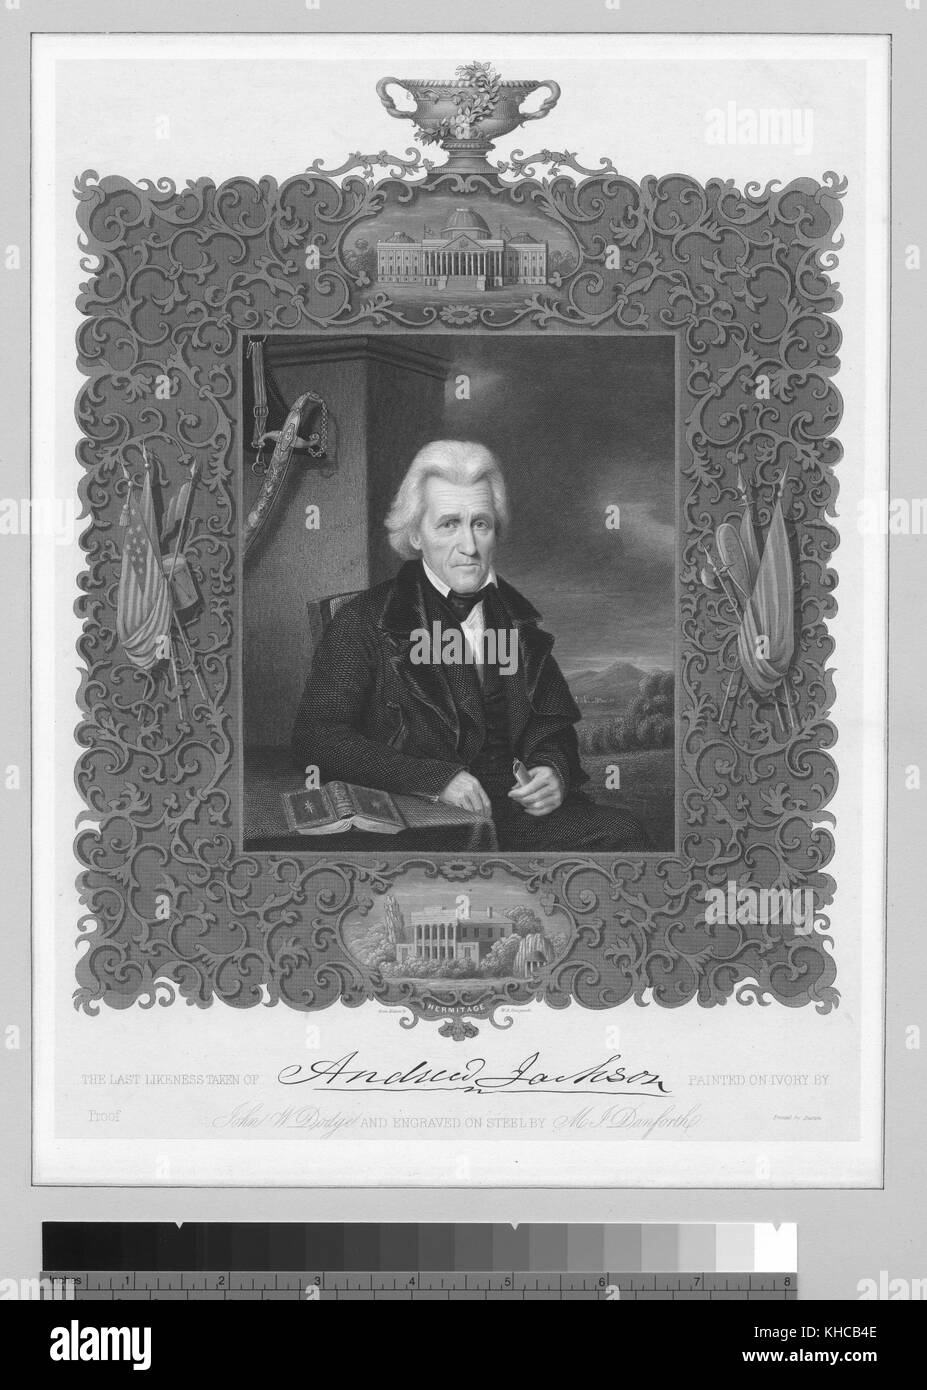 L'ultima somiglianza prese di Andrew Jackson, 1843. dalla biblioteca pubblica di new york. Foto Stock